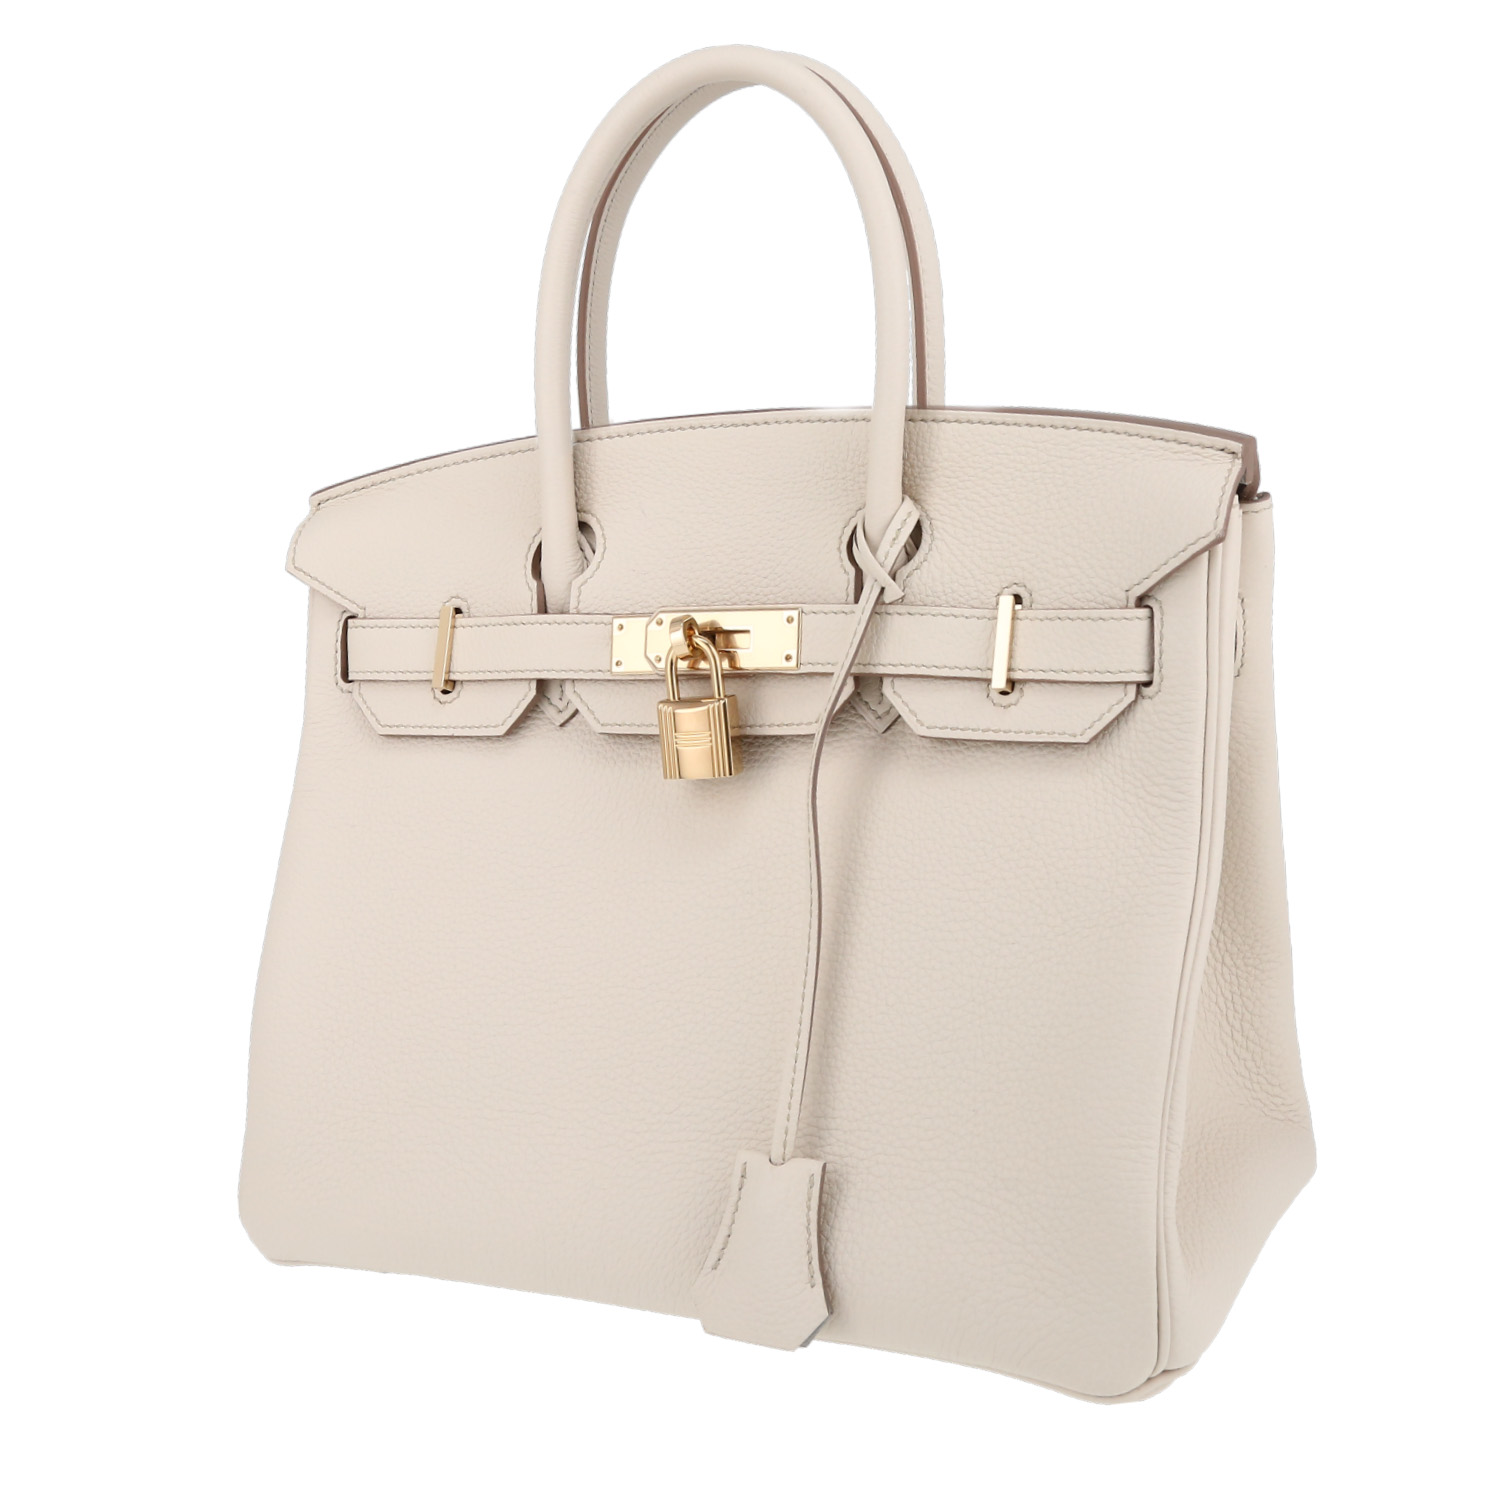 Hermès Birkin 30 cm handbag in Craie togo leather | auctionlab